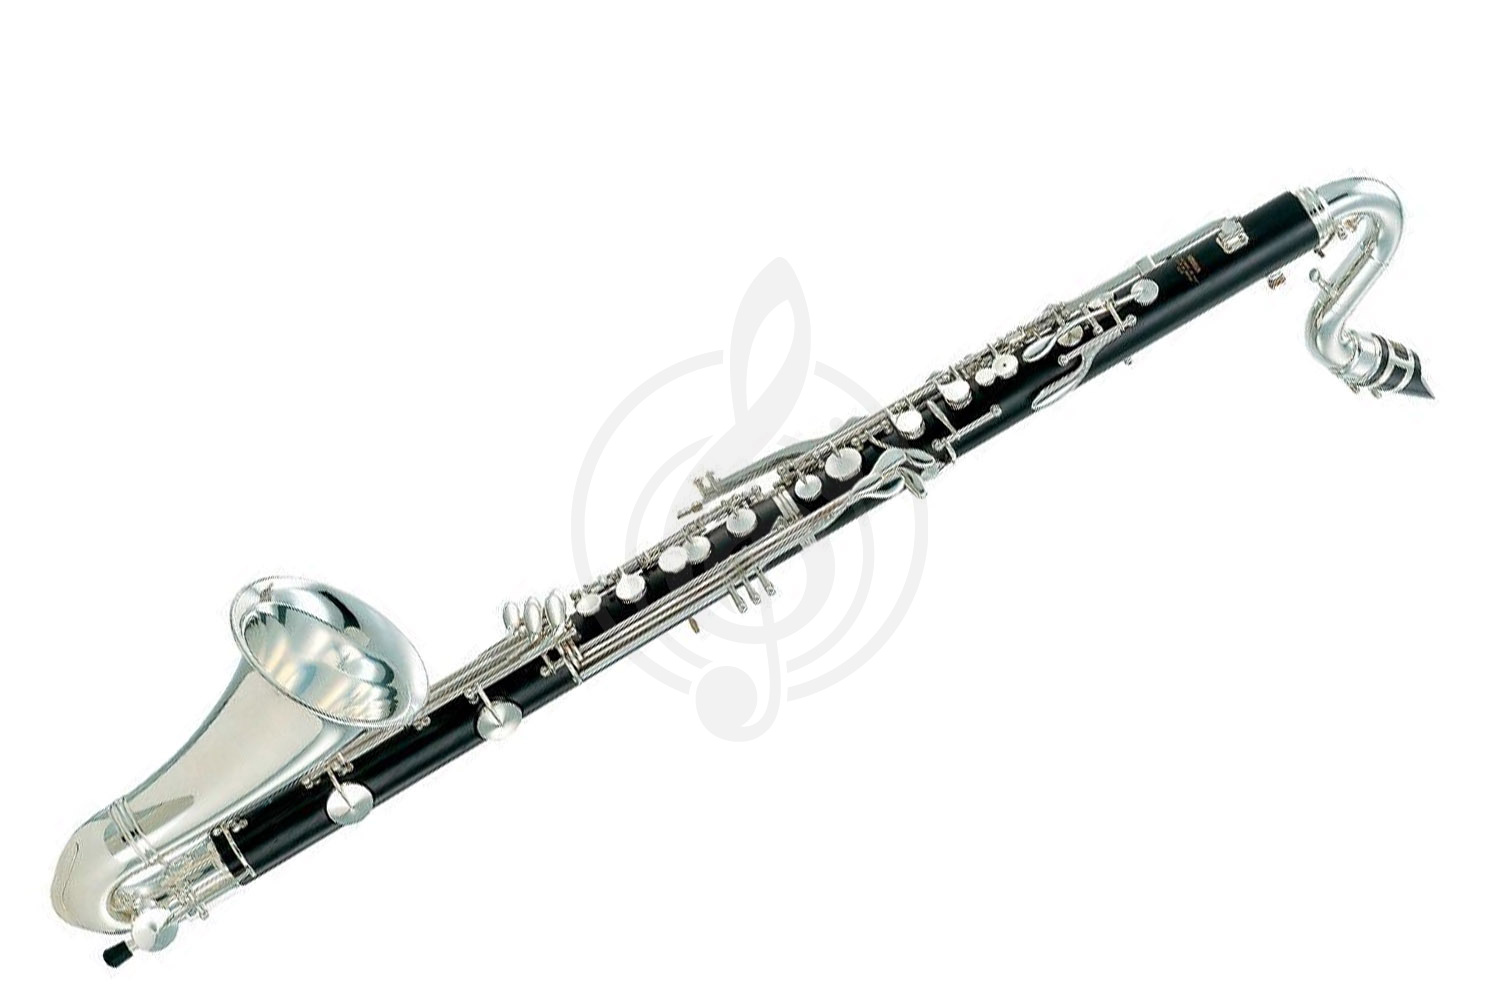 Кларнет Кларнеты Yamaha Yamaha YCL-621 II - бас кларнет in Bb, низкое Eb, чёрное дерево, ручная работа YCL-621II - фото 1